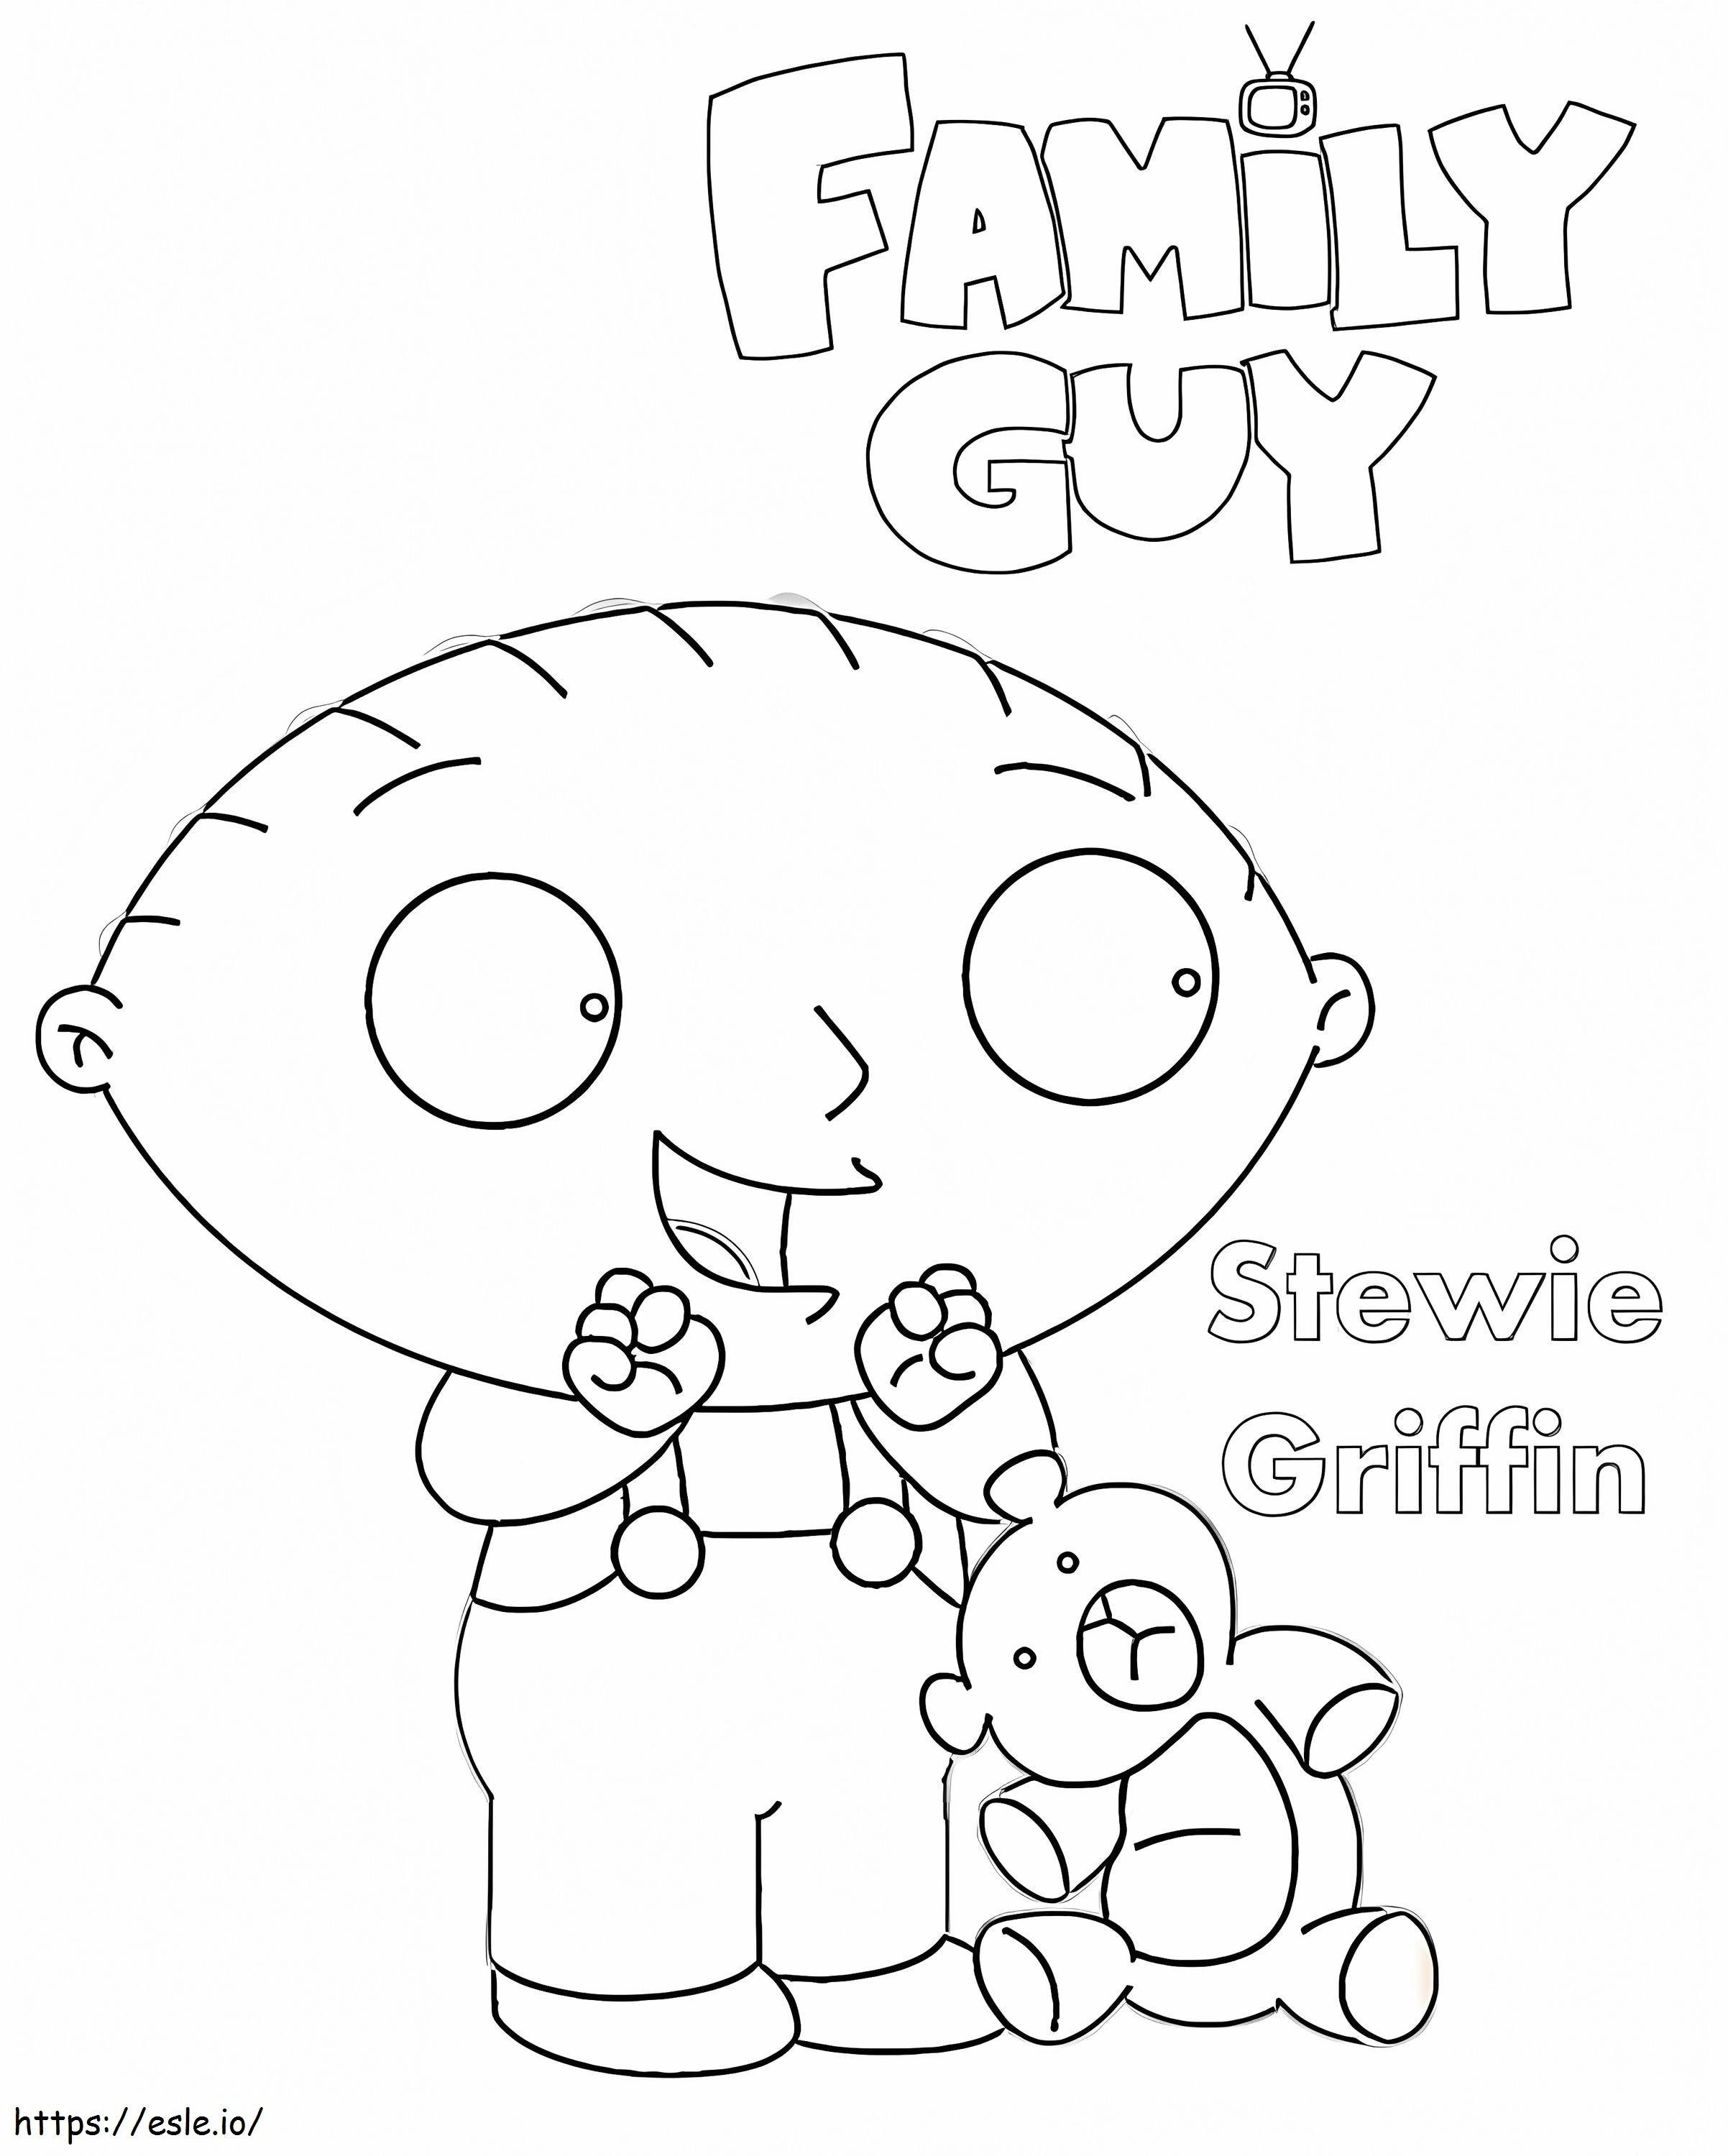 Padre de familia Stewie Griffin para colorear